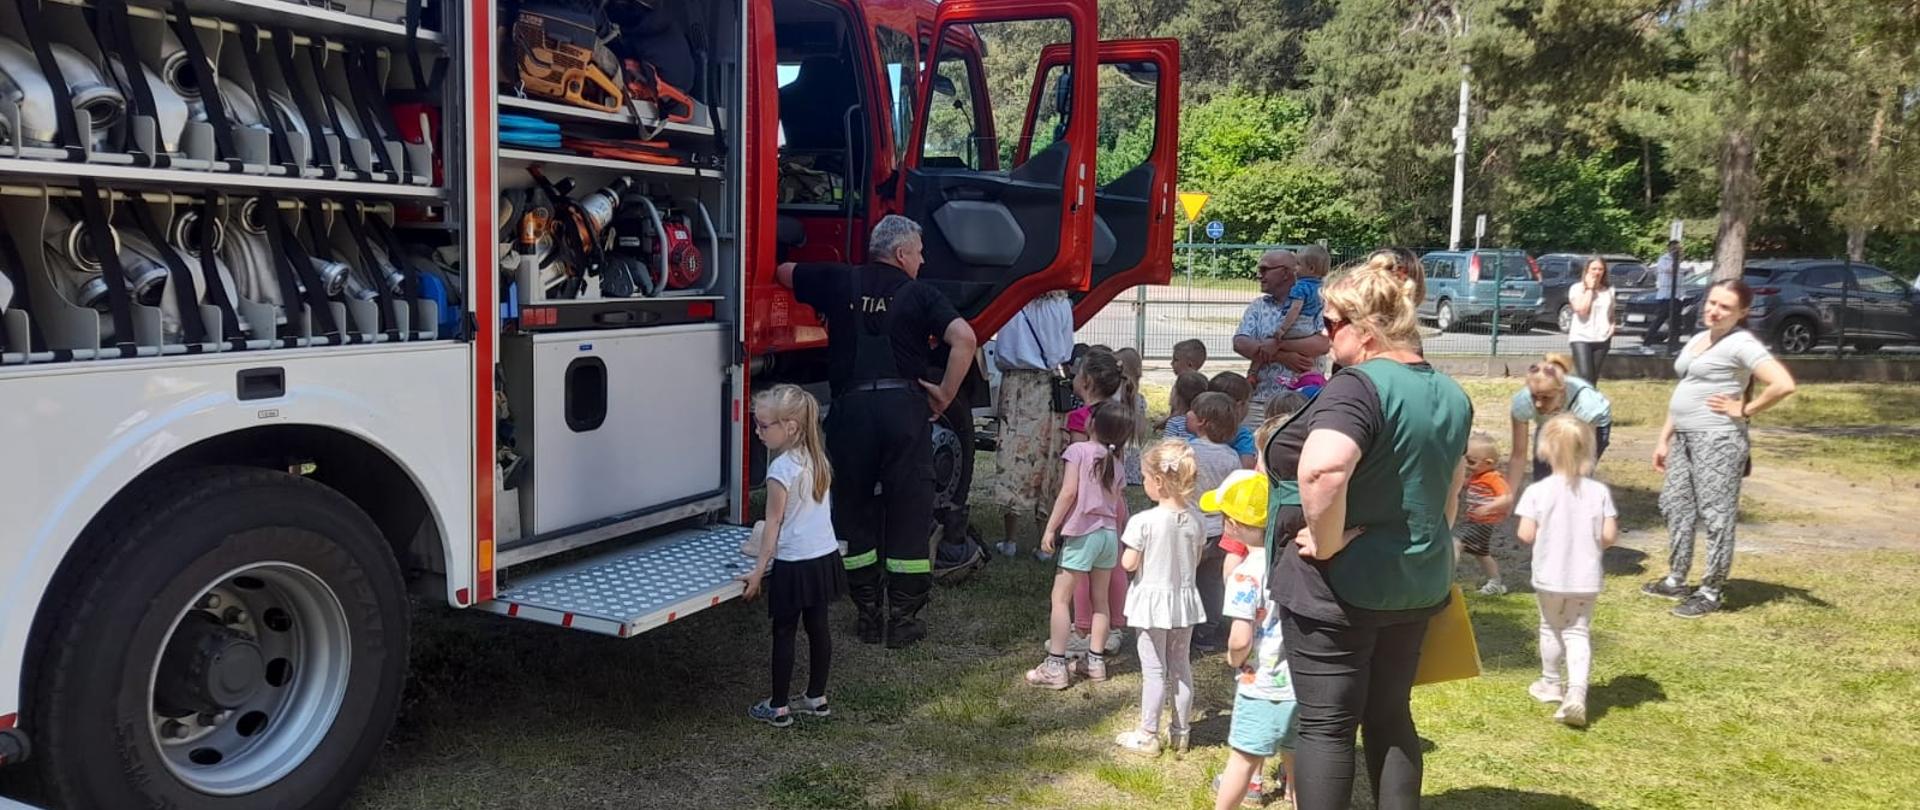 Dzieci z opiekunami stoją przed samochodem pożarniczym w kolejce tak aby każde dziecko mogło wejść do pojazdu i zobaczyć go w środku. W samochodzie w skrytkach widać sprzęt strażacki.